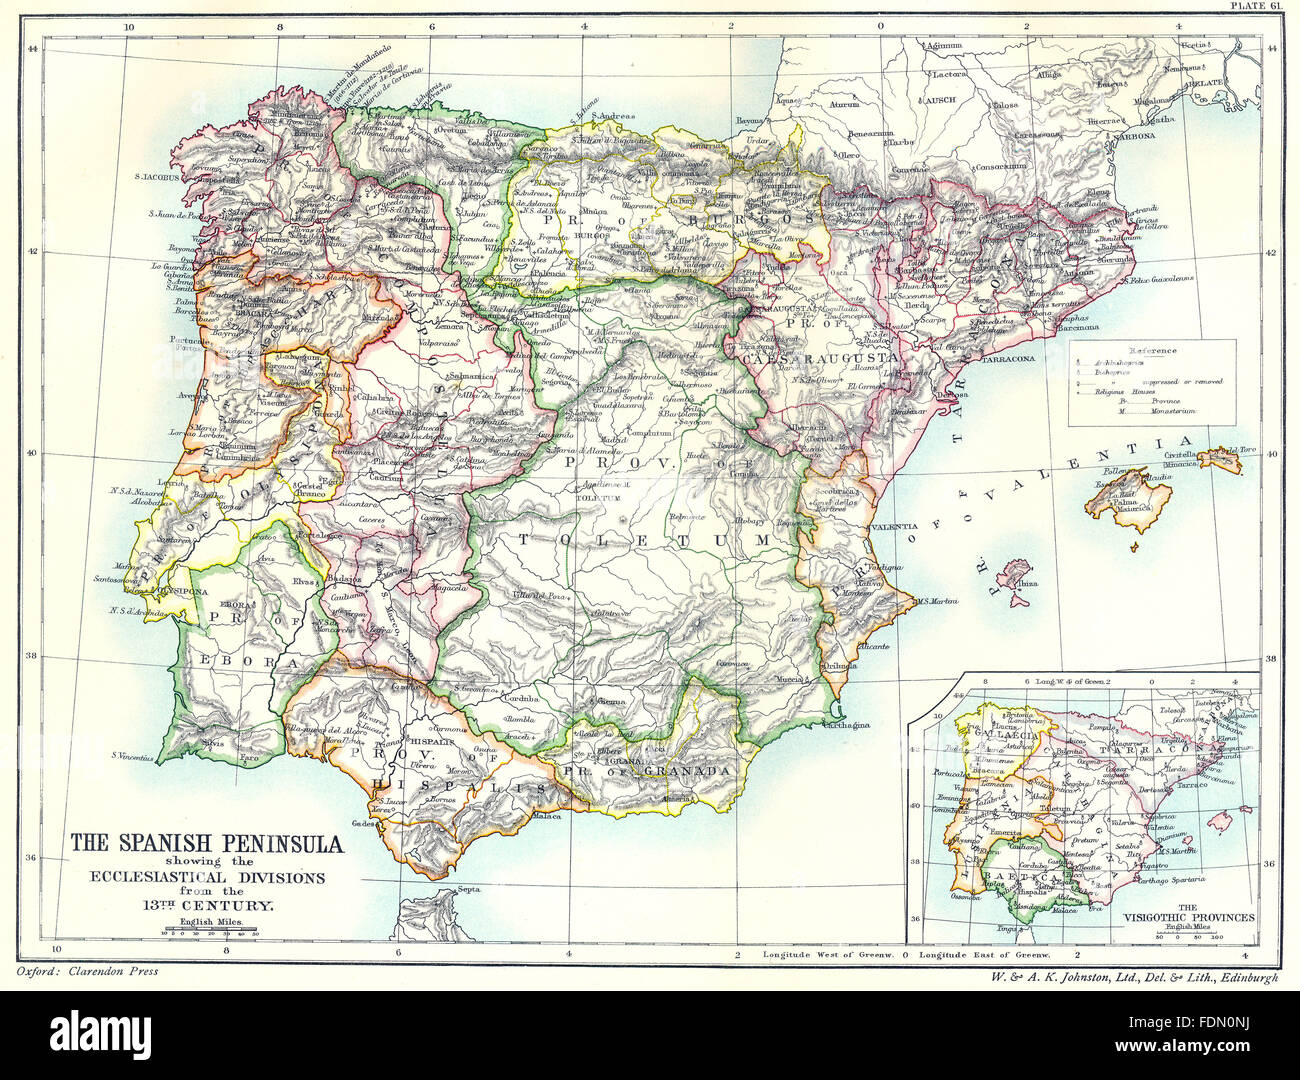 IBERIA: Ecclesiastical divisions 13th century; Visigothic Provinces, 1903 map Stock Photo